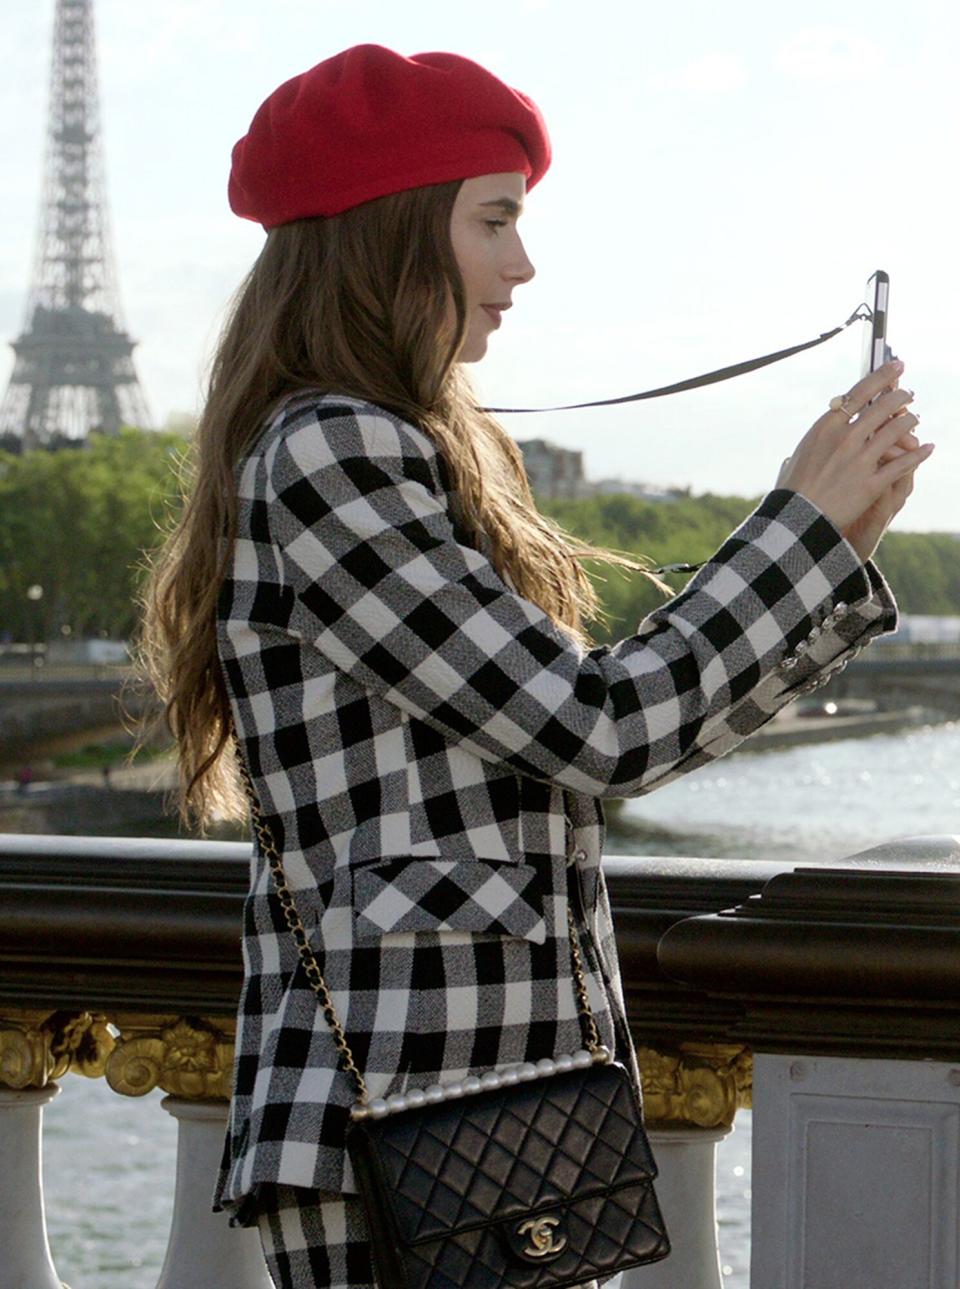 EMILY IN PARIS